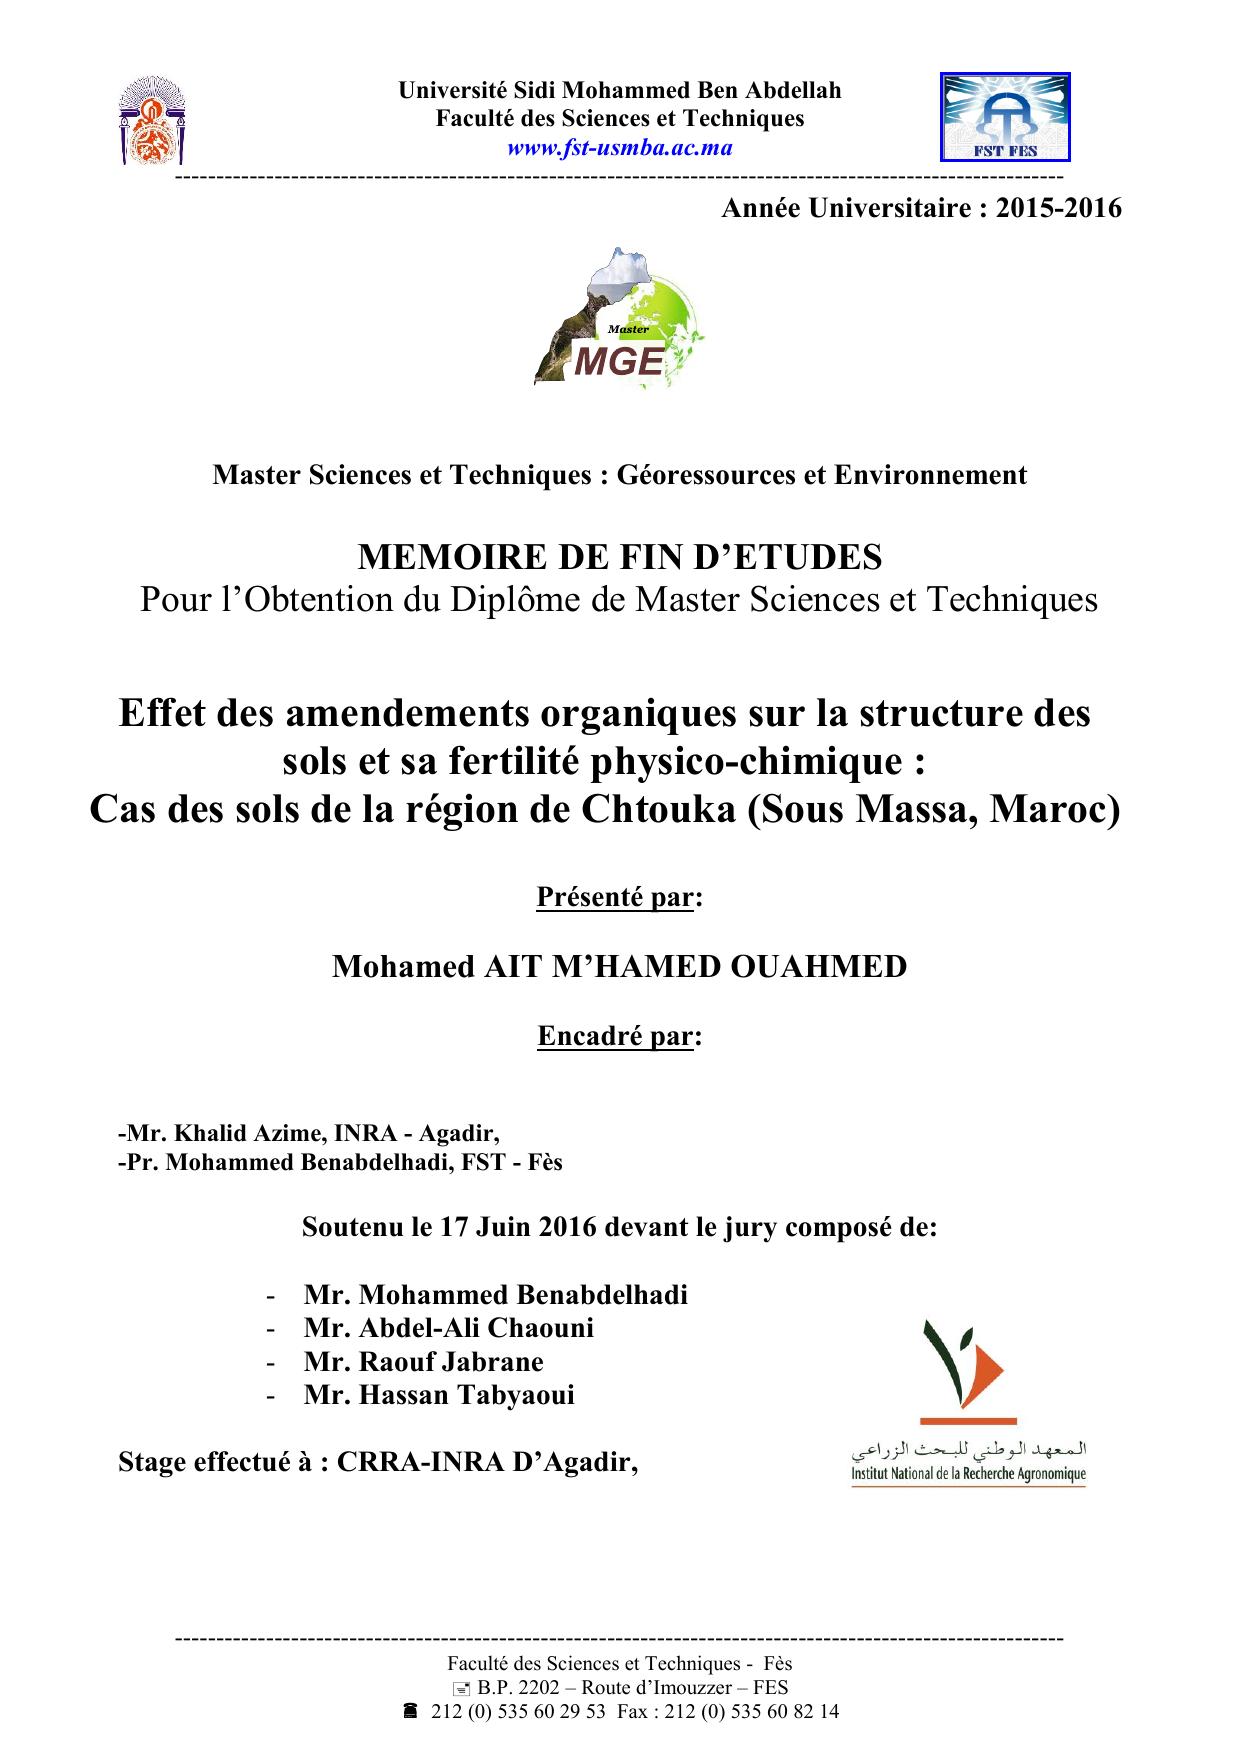 Effet des amendements organiques sur la structure des sols et sa fertilité physico-chimique : Cas des sols de la région de Chtouka (Sous Massa, Maroc)